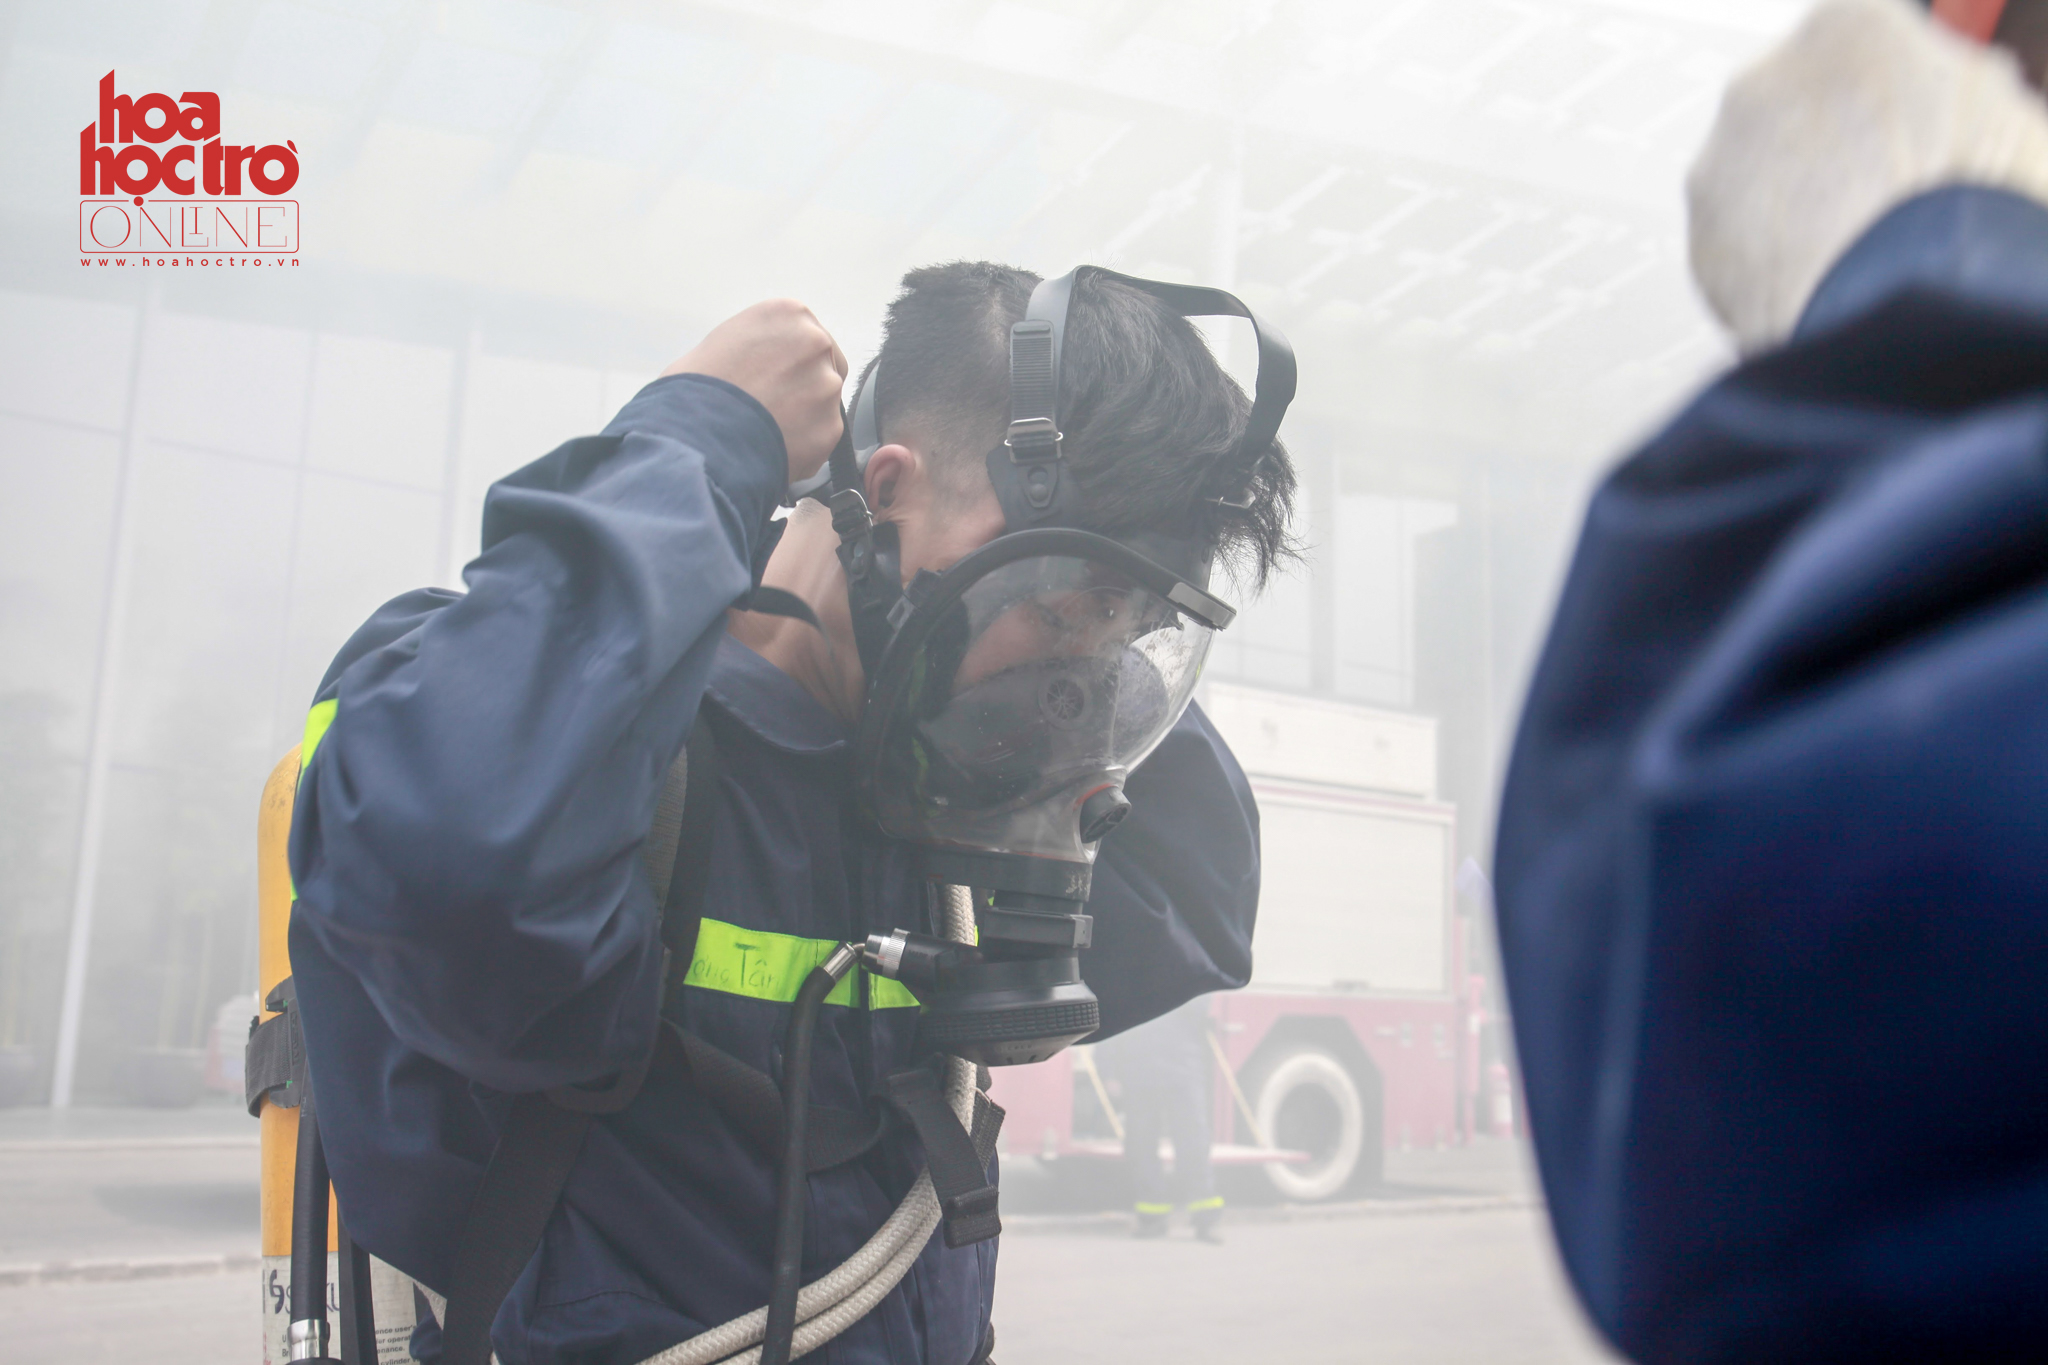 Trong công tác chữa cháy dùng mặt nạ phòng độc là hết sức cần thiết để bảo vệ tính mạng lính cứu hỏa